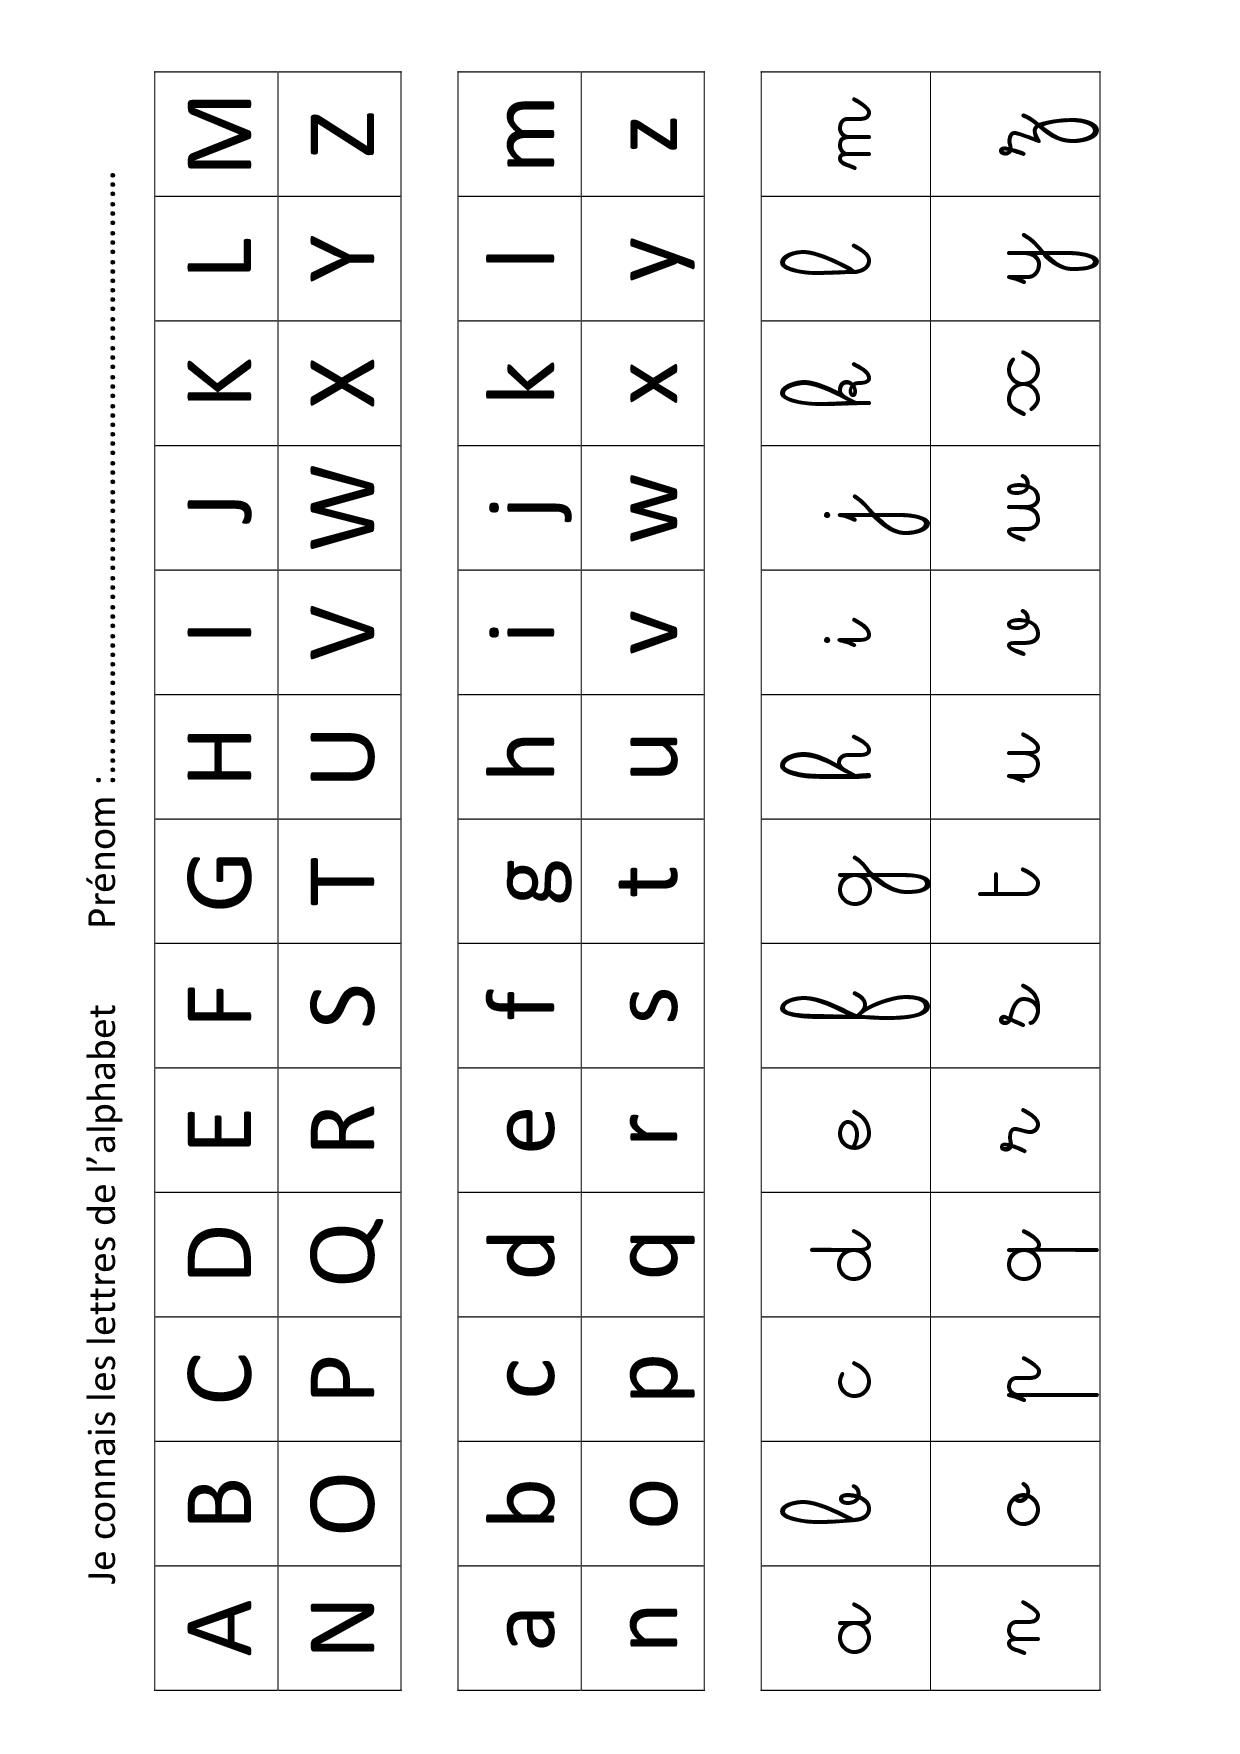 Apprendre Les Lettres De L'alphabet Avec Leap Frog dedans Exercice D Alphabet En Maternelle